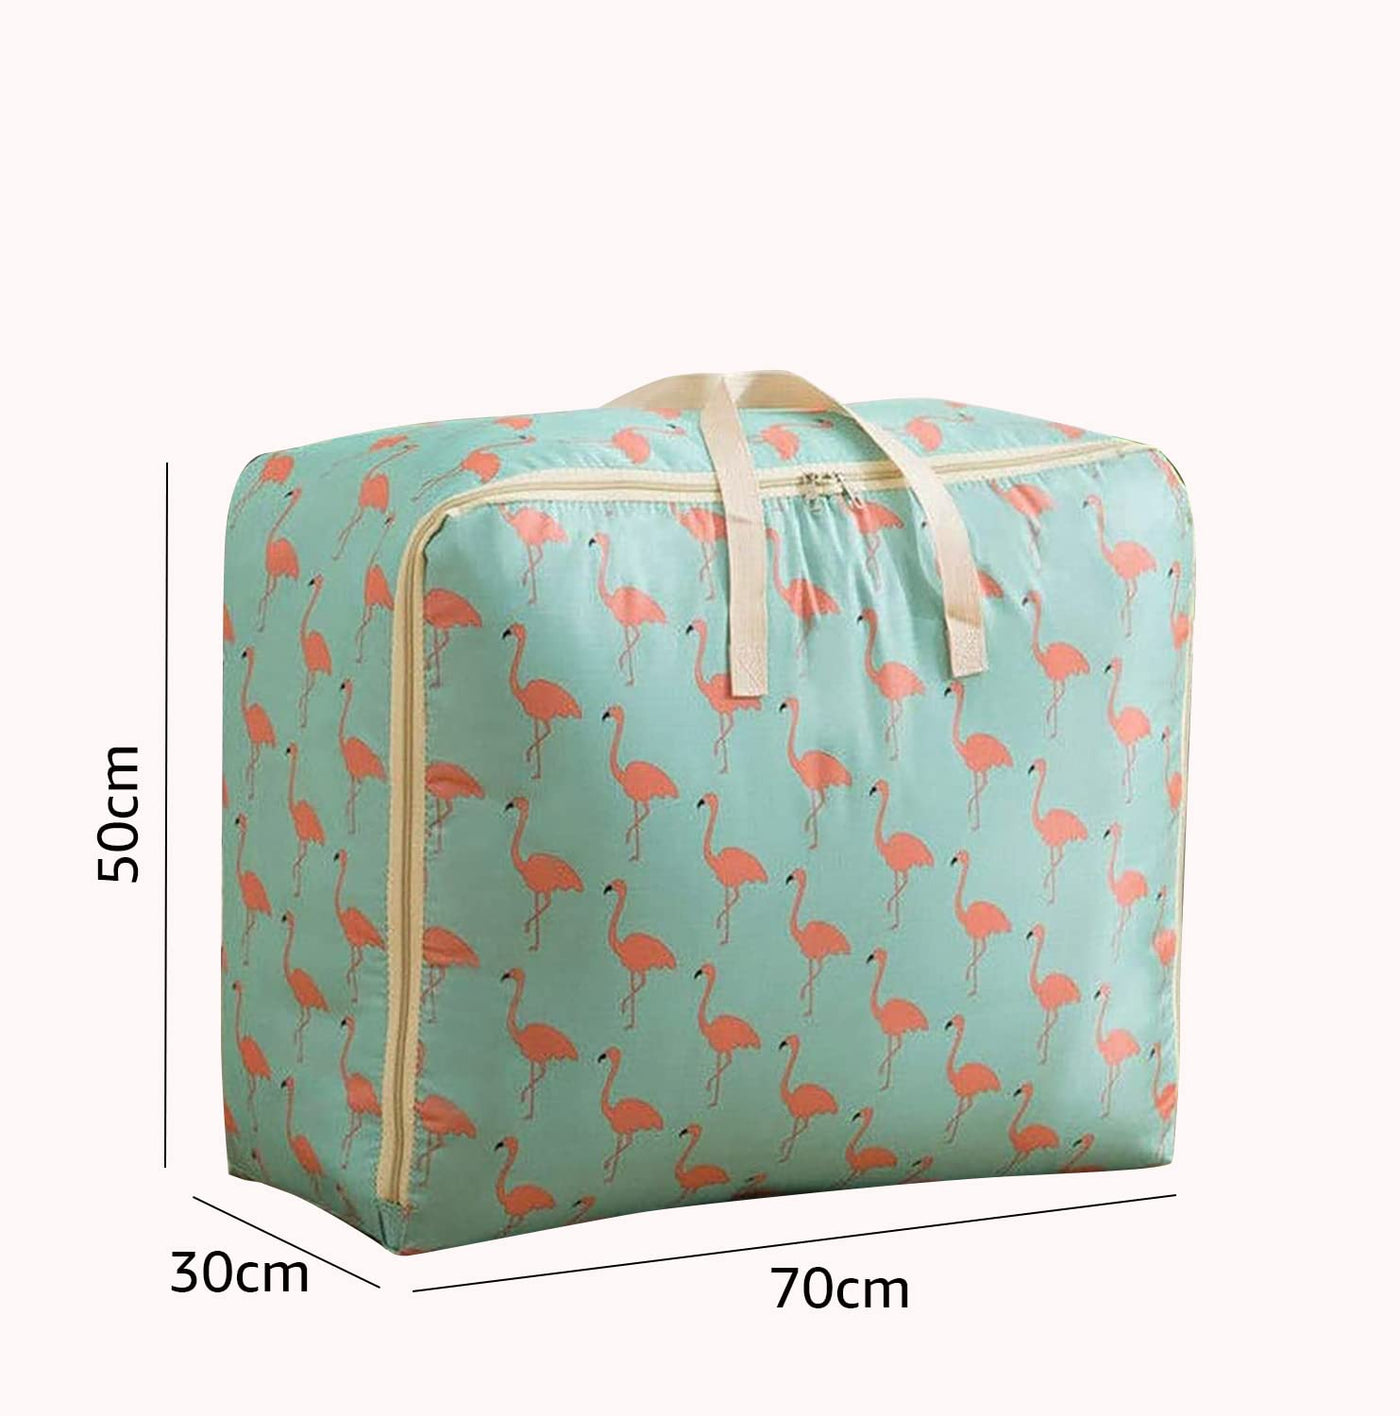 Extra Large Oversized Handy Storage Bag - Green Flamingo